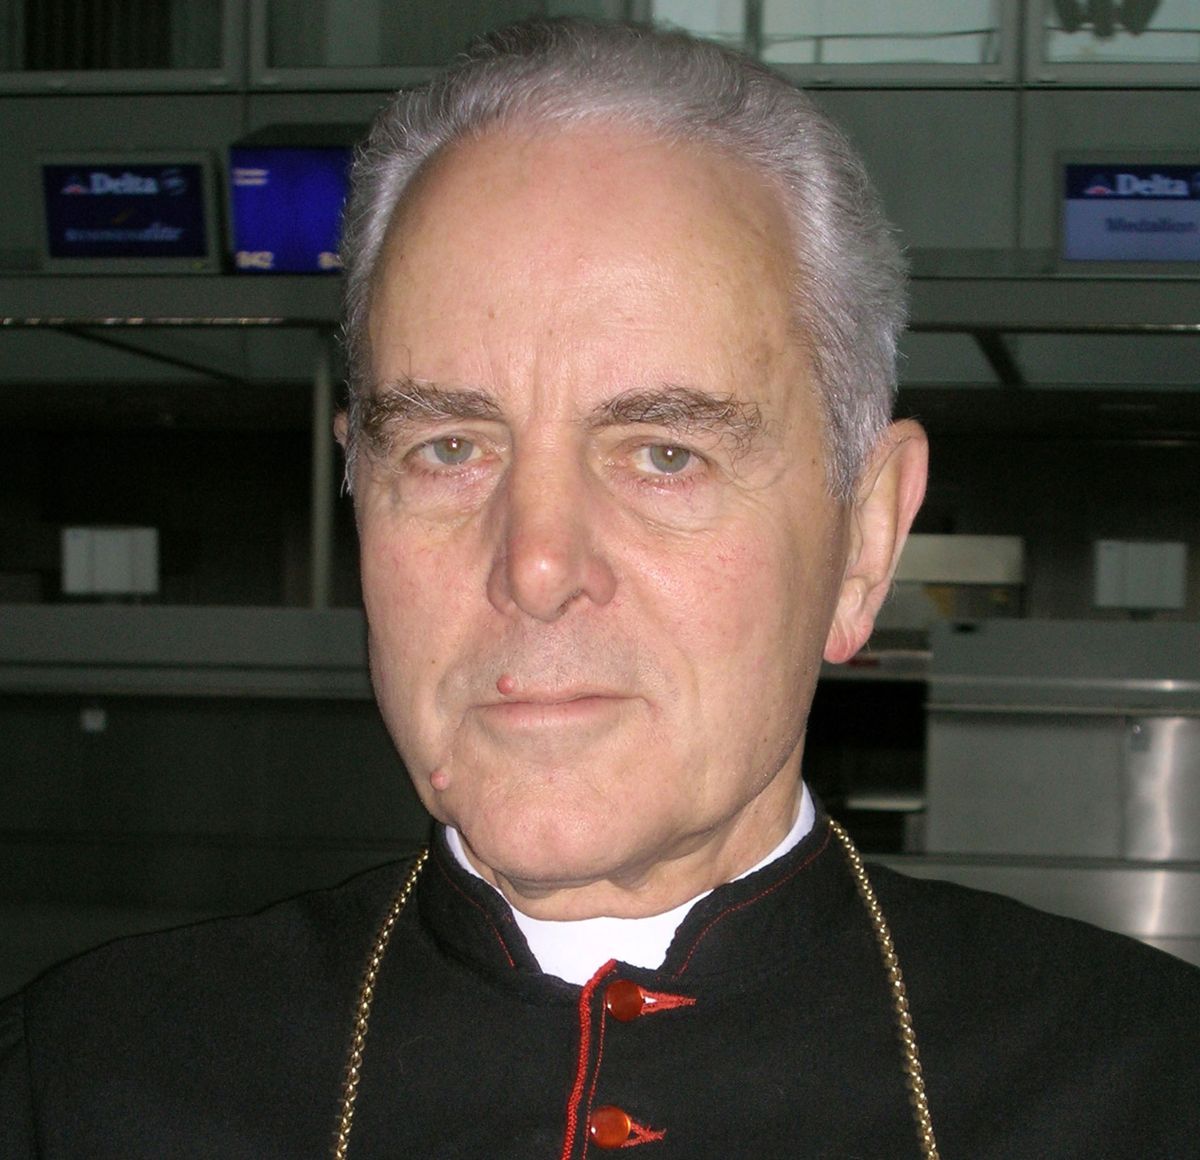 Biskup negujący Holokaust przegrał z niemieckim wymiarem sprawiedliwości